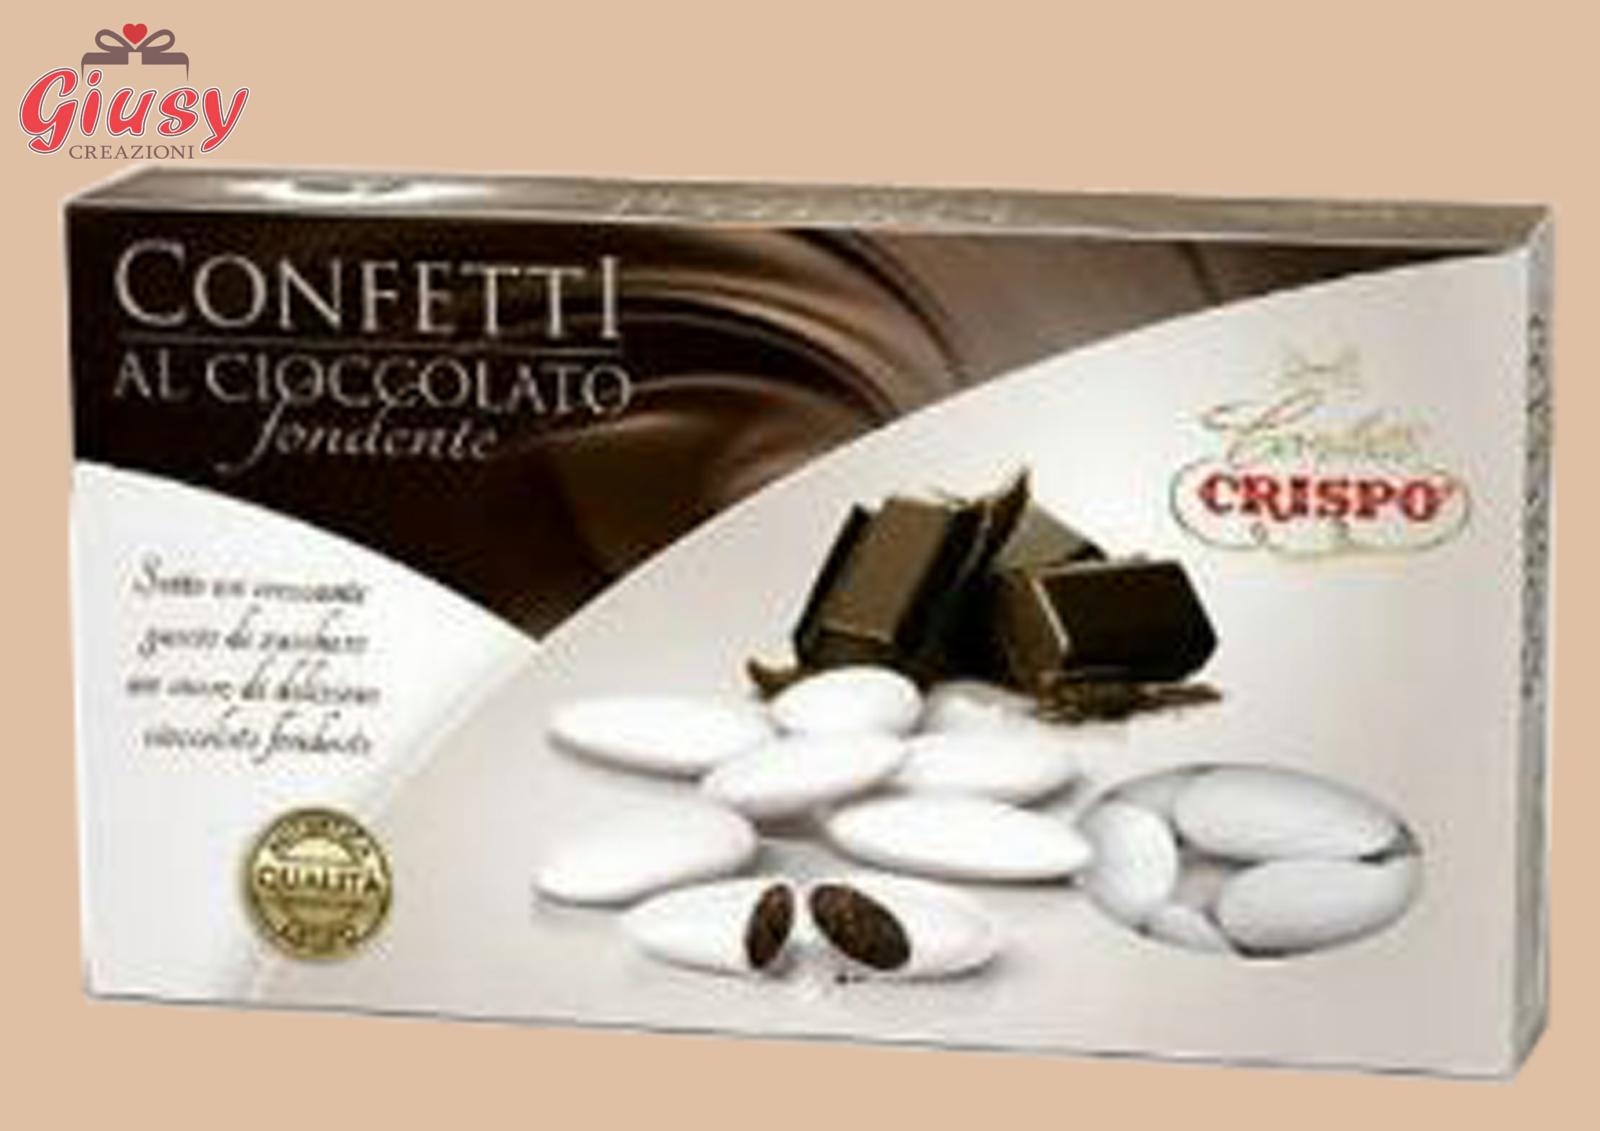 Confetti Crispo Al Cioccolato Fondente Confezione 1Kg Bianco